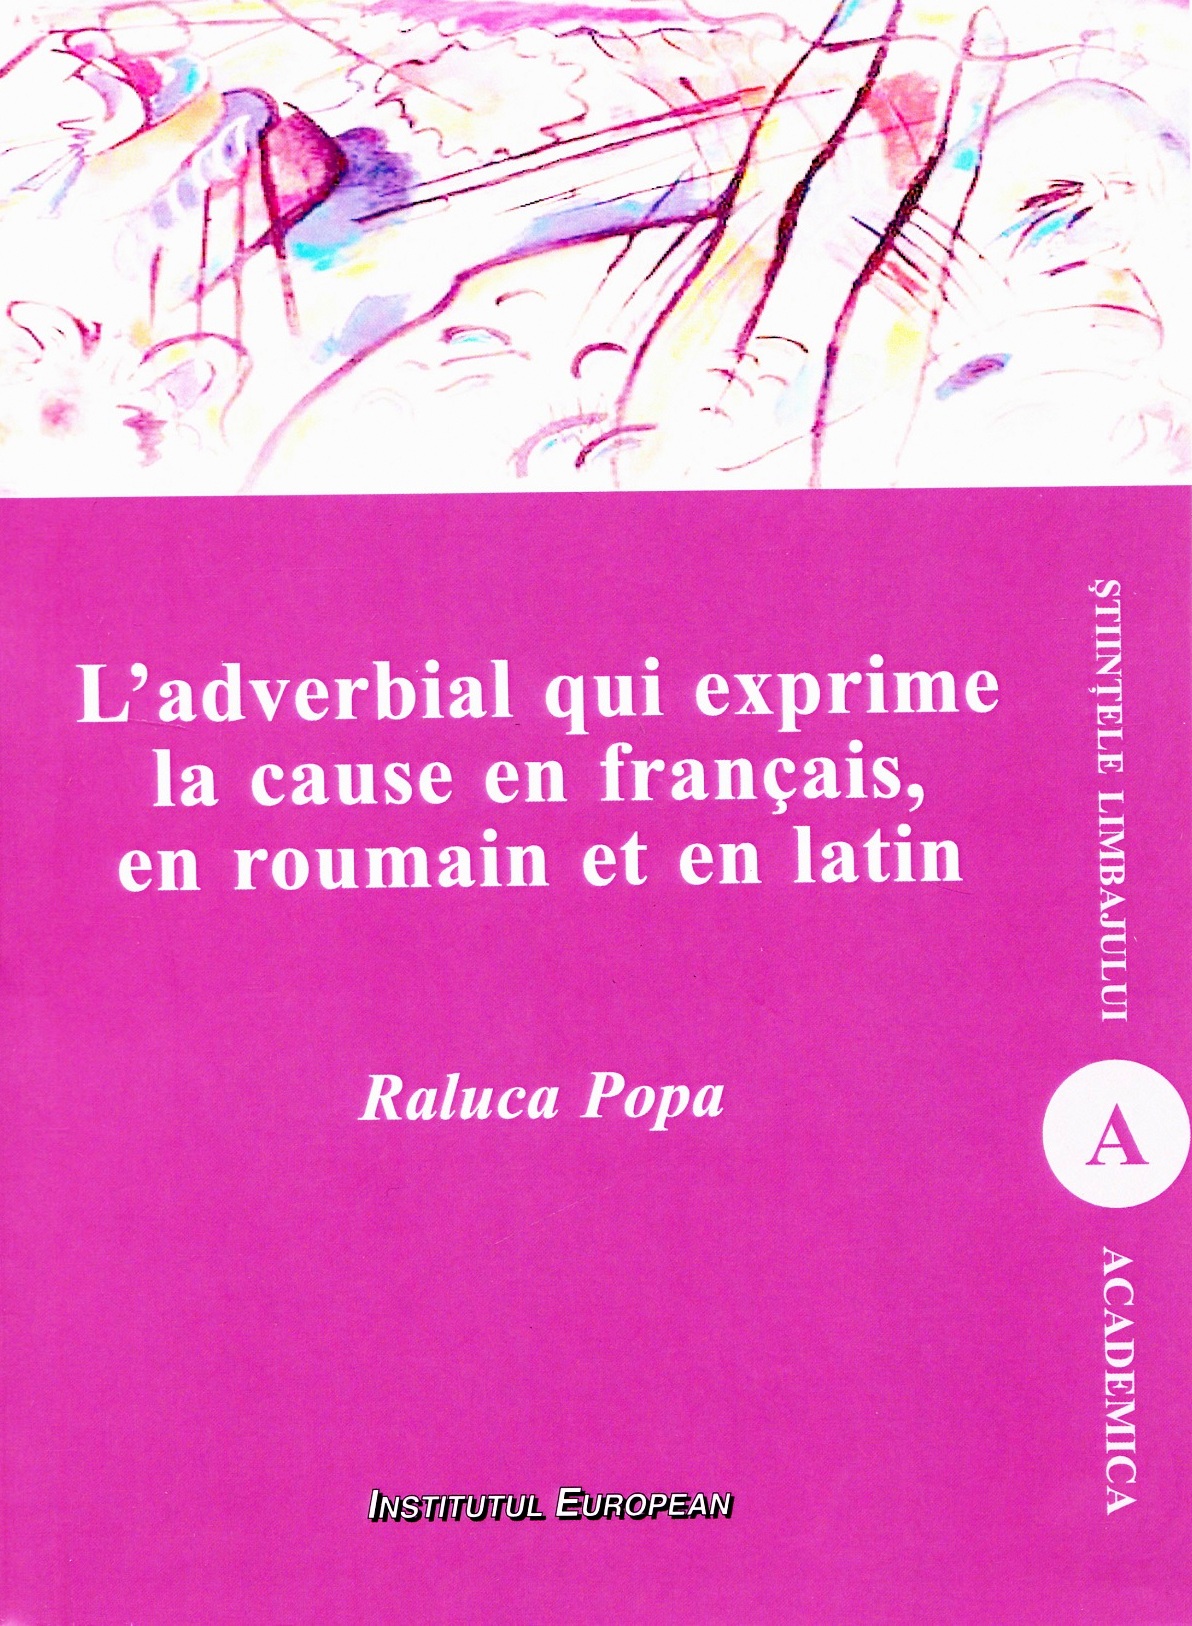 L'adverbial qui exprime la cause en francais, en roumain et en latin - Raluca Popa